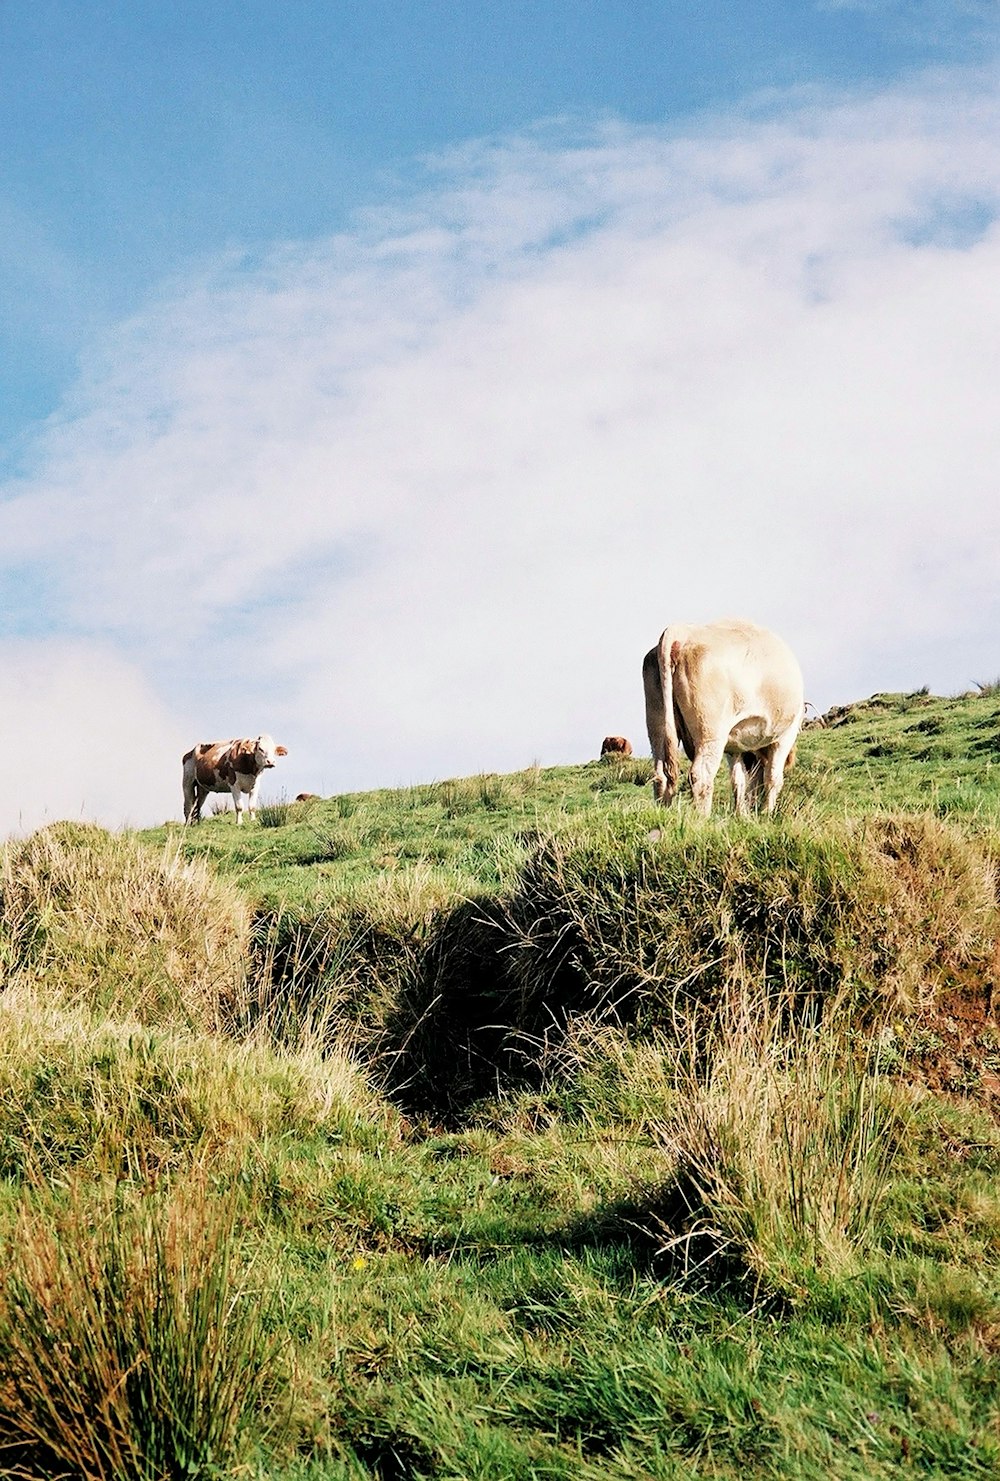 풀로 덮인 언덕 위에 서 있는 두 마리의 소